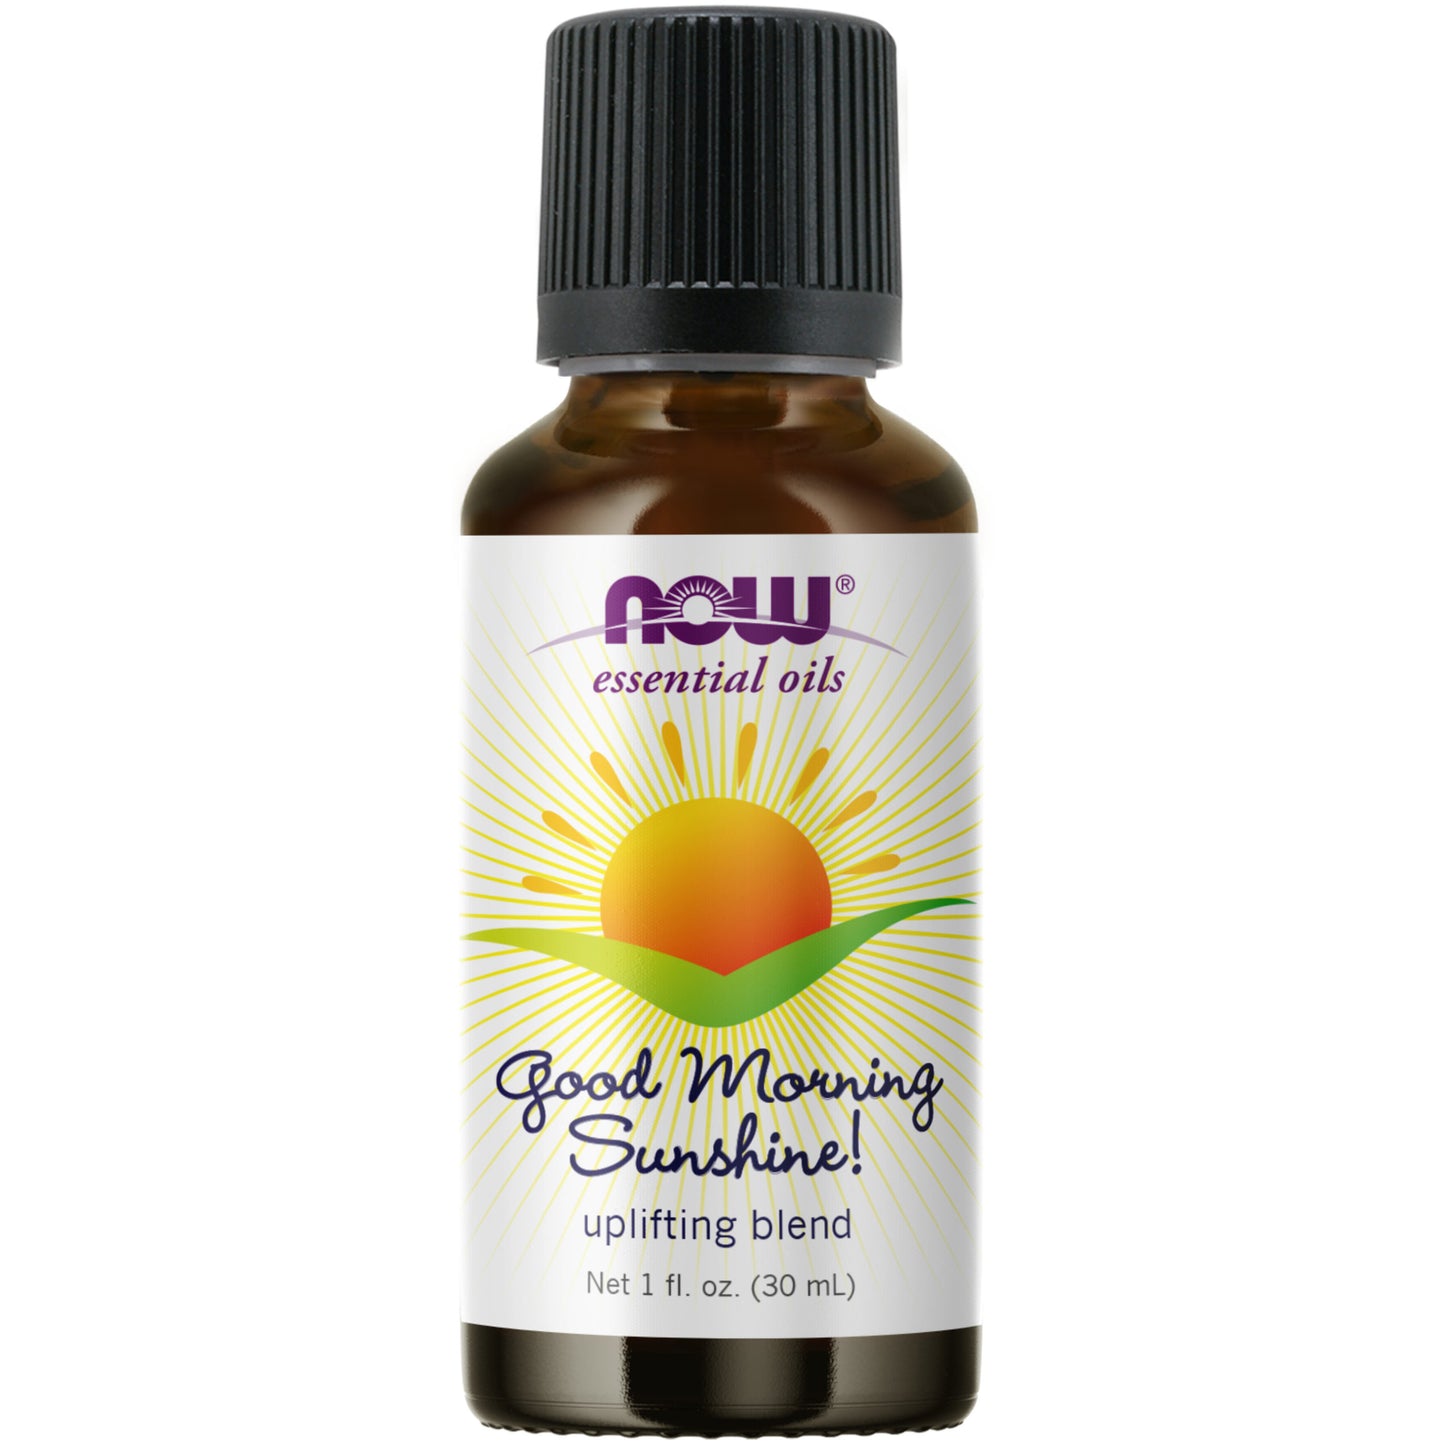 Good Morning Sunshine Oil Blend (30 ml)